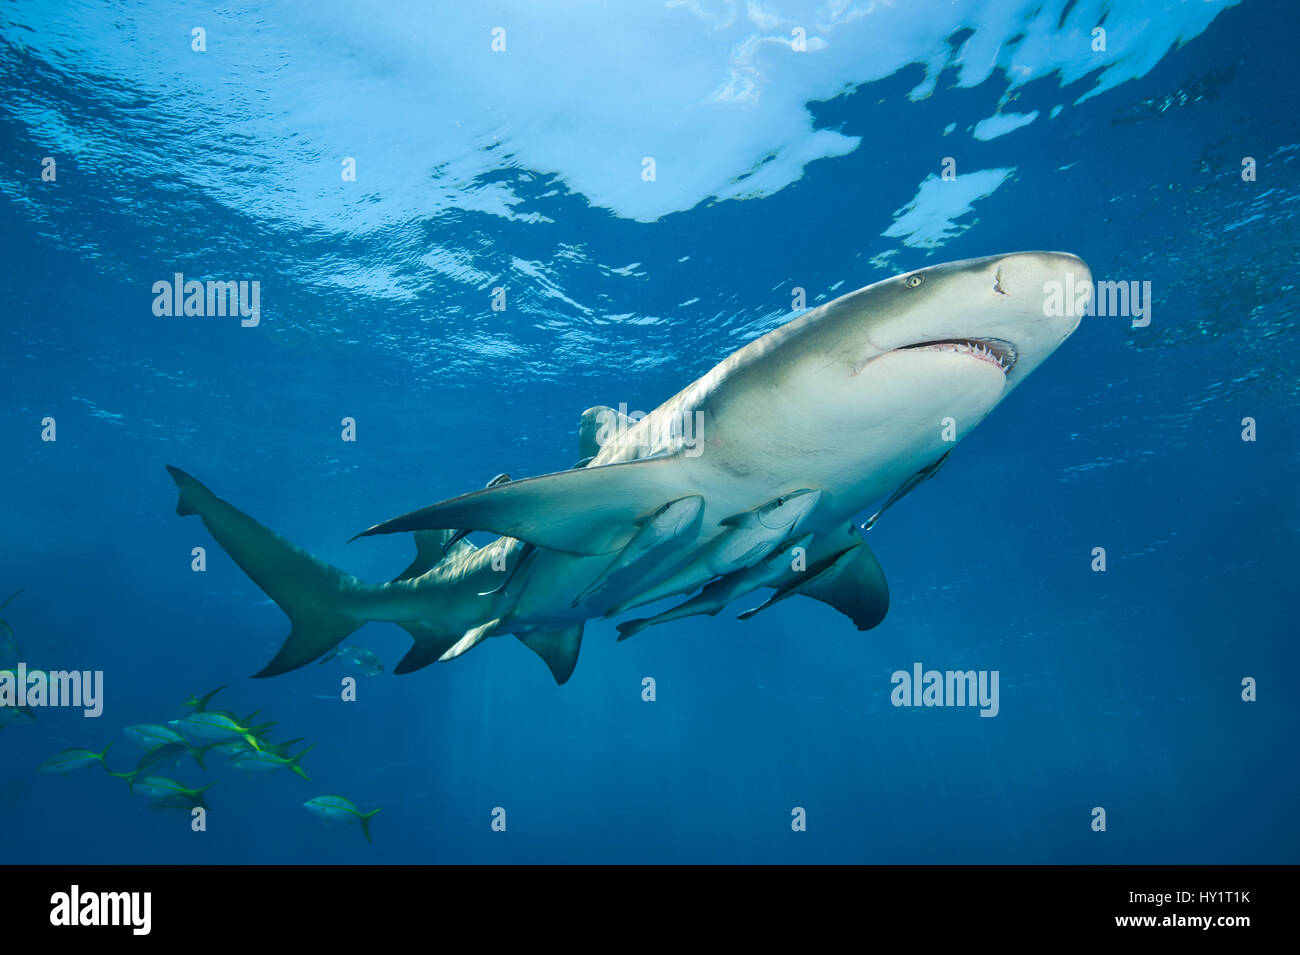 Le requin citron (Negaprion brevirostris) accompagné par Remoras (Echeneis naucrates) nager près de la surface. L'île de Grand Bahama. Bahamas. Ouest de l'océan Atlantique tropical. Banque D'Images